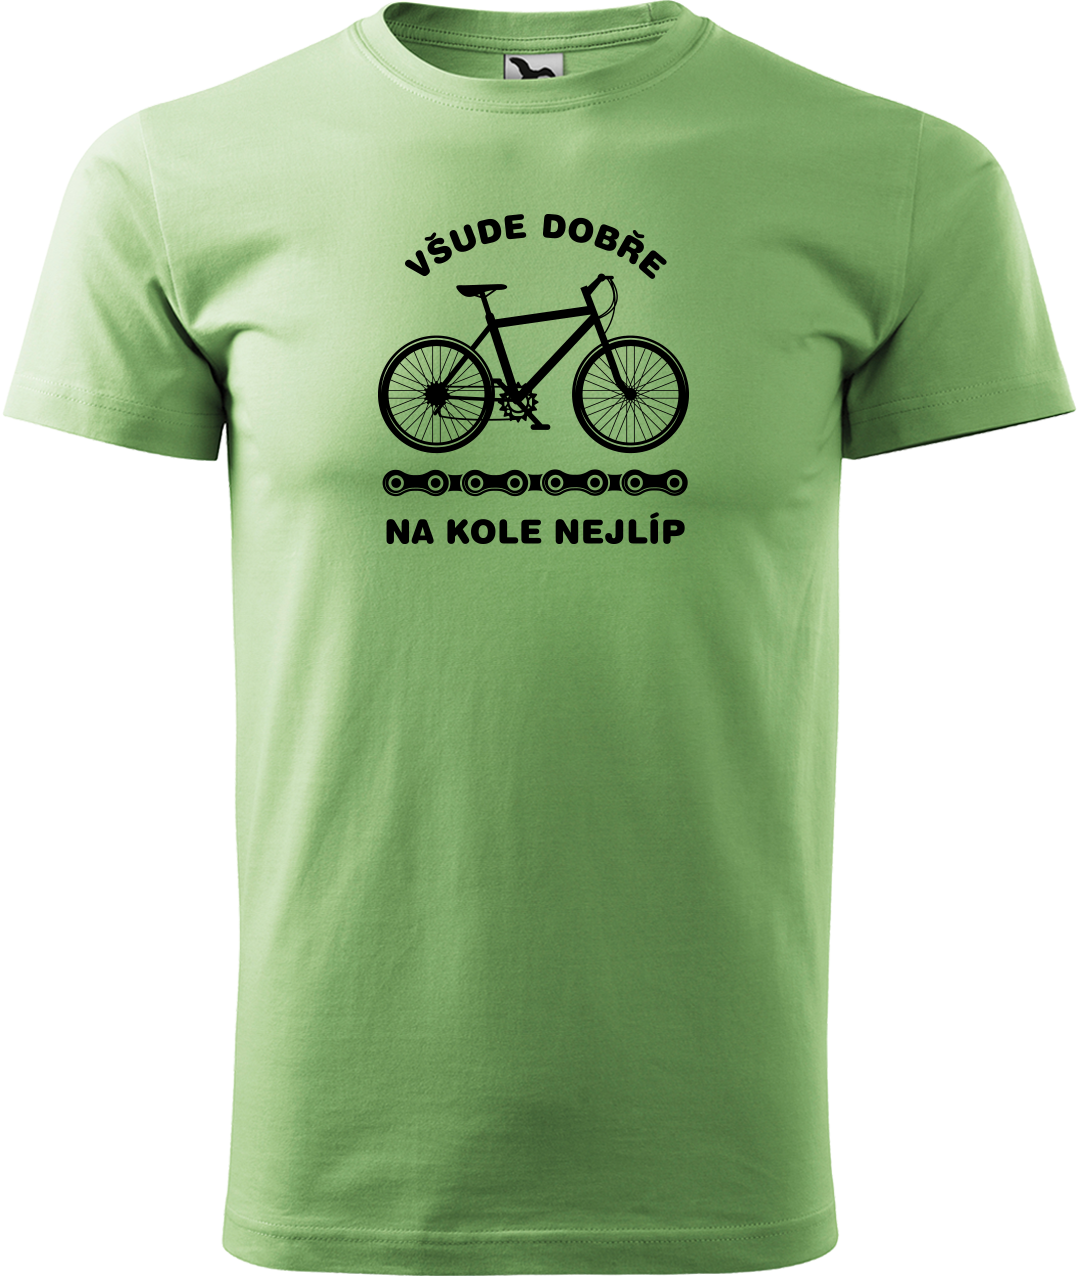 Pánské tričko s kolem - Všude dobře, na kole nejlíp Velikost: XL, Barva: Trávově zelená (39)